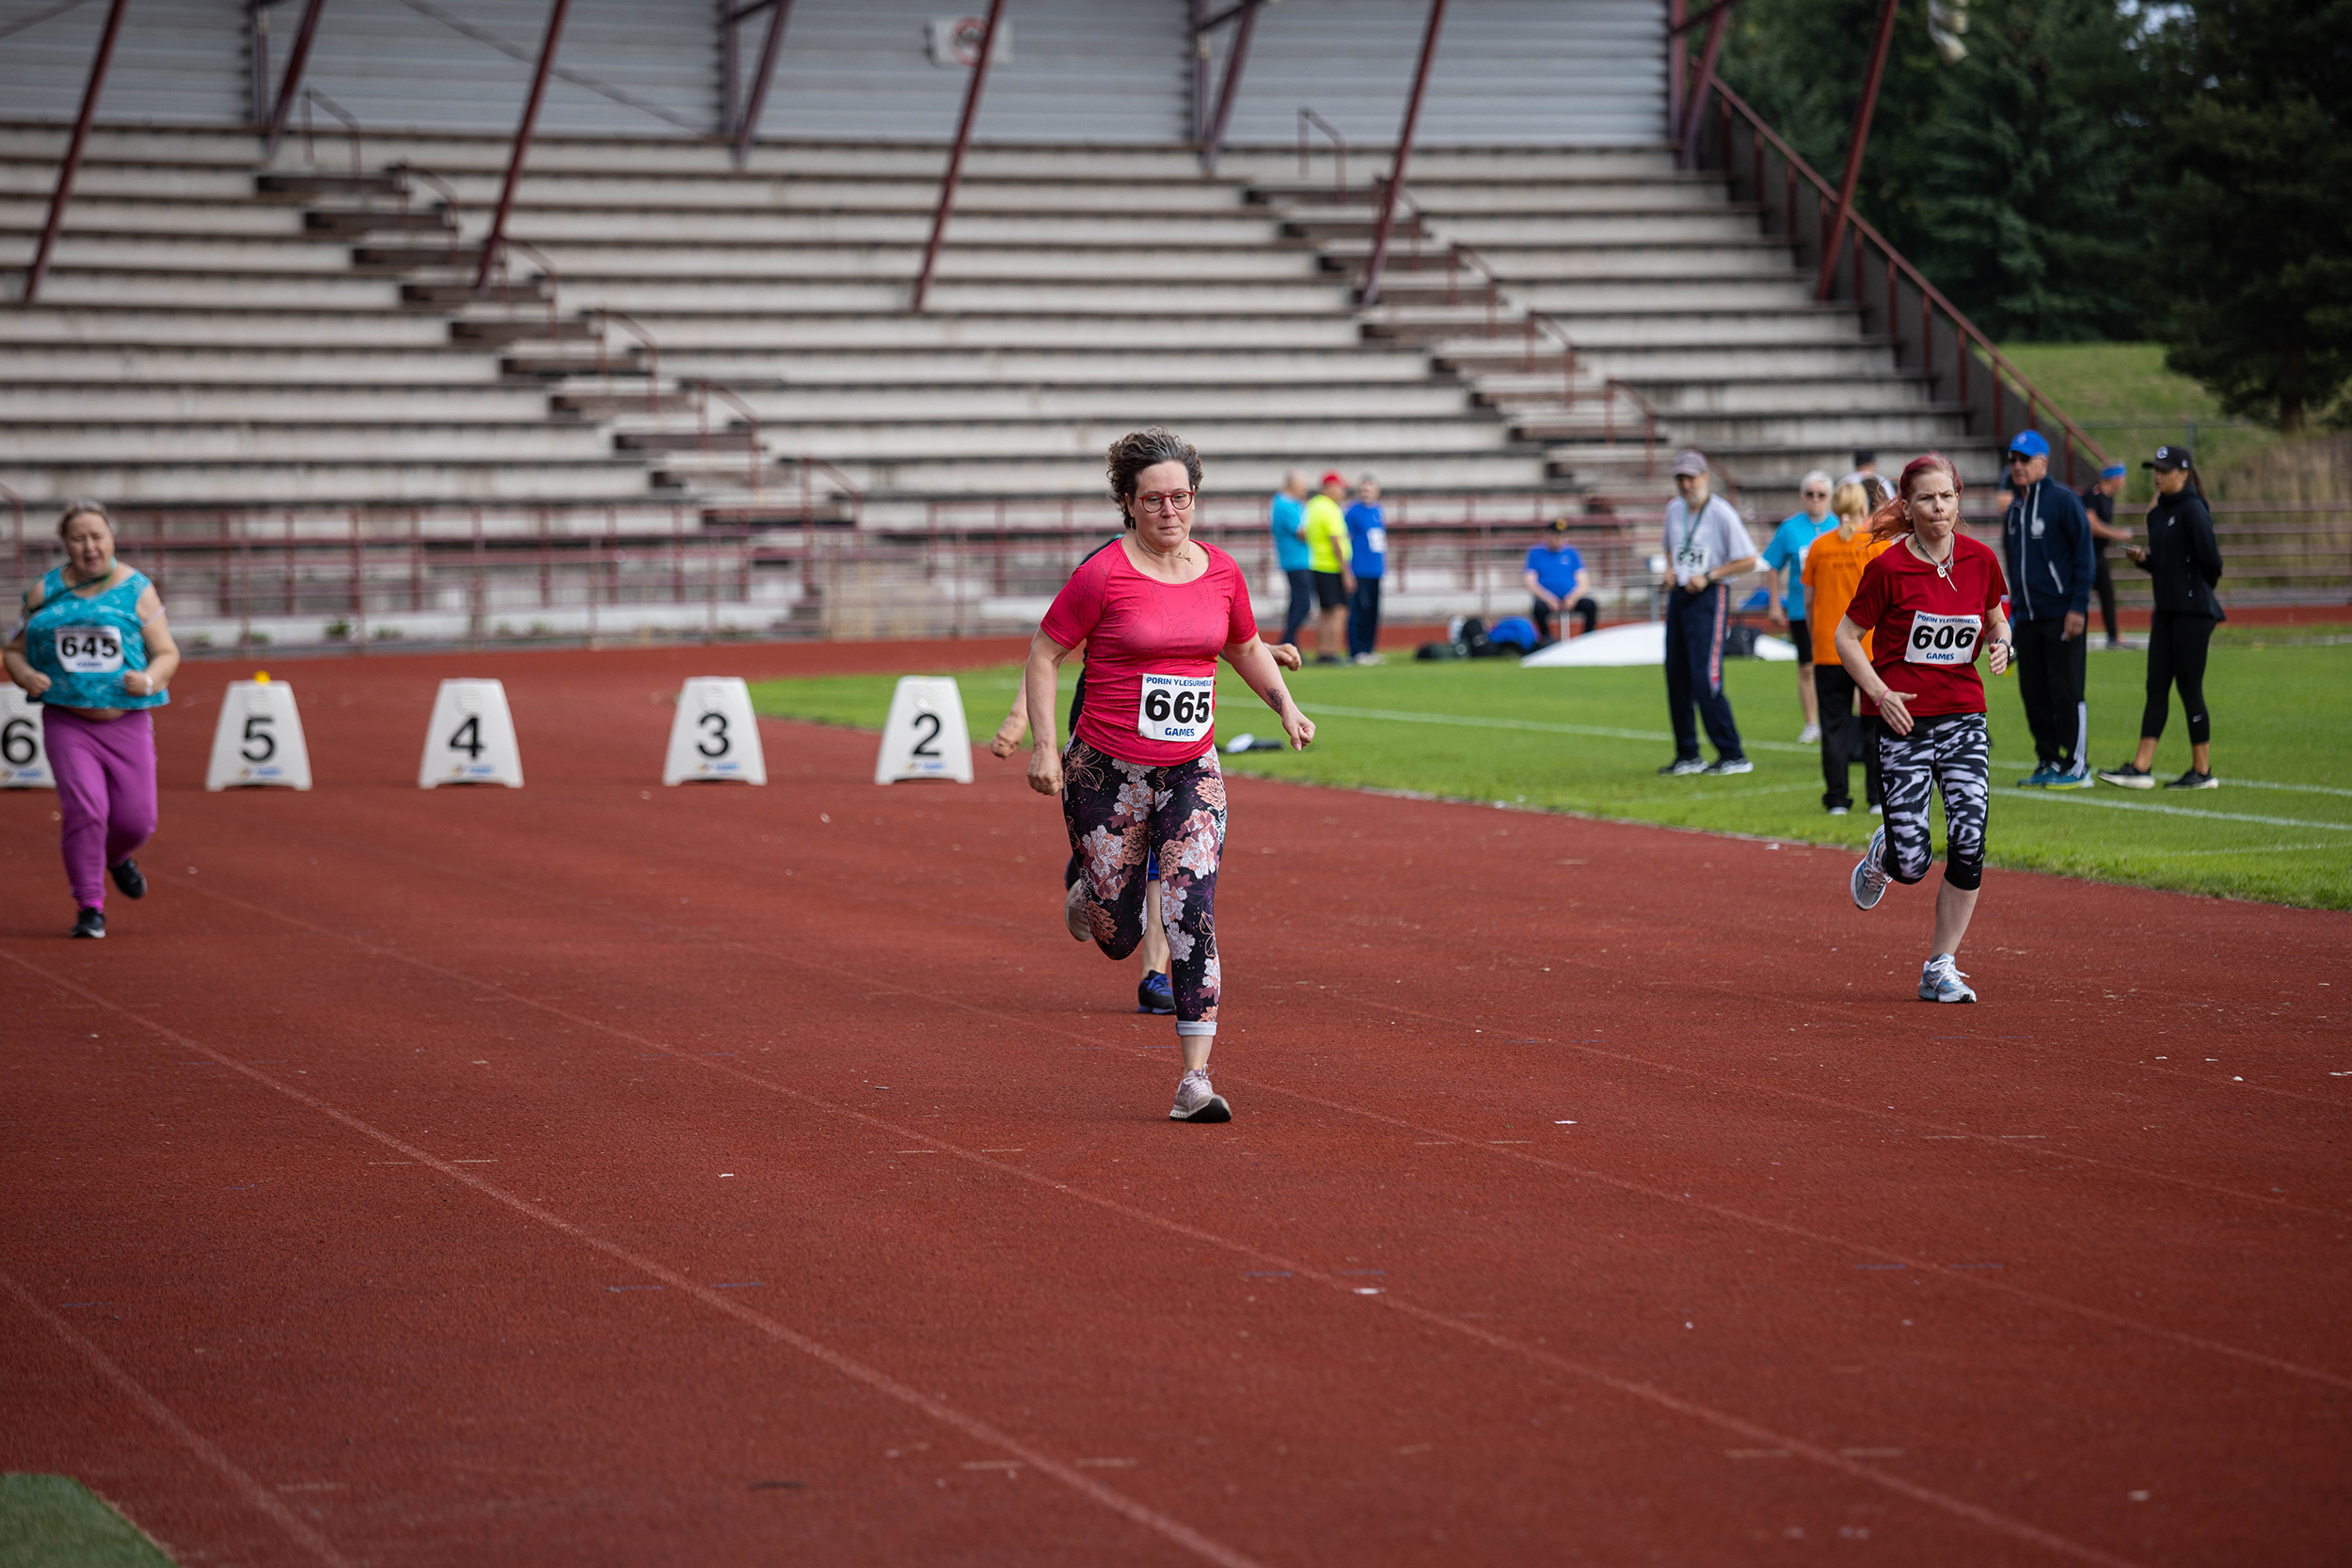 Kolme naista juoksee yleisurheilukentän juoksuradoilla kohti maalia.